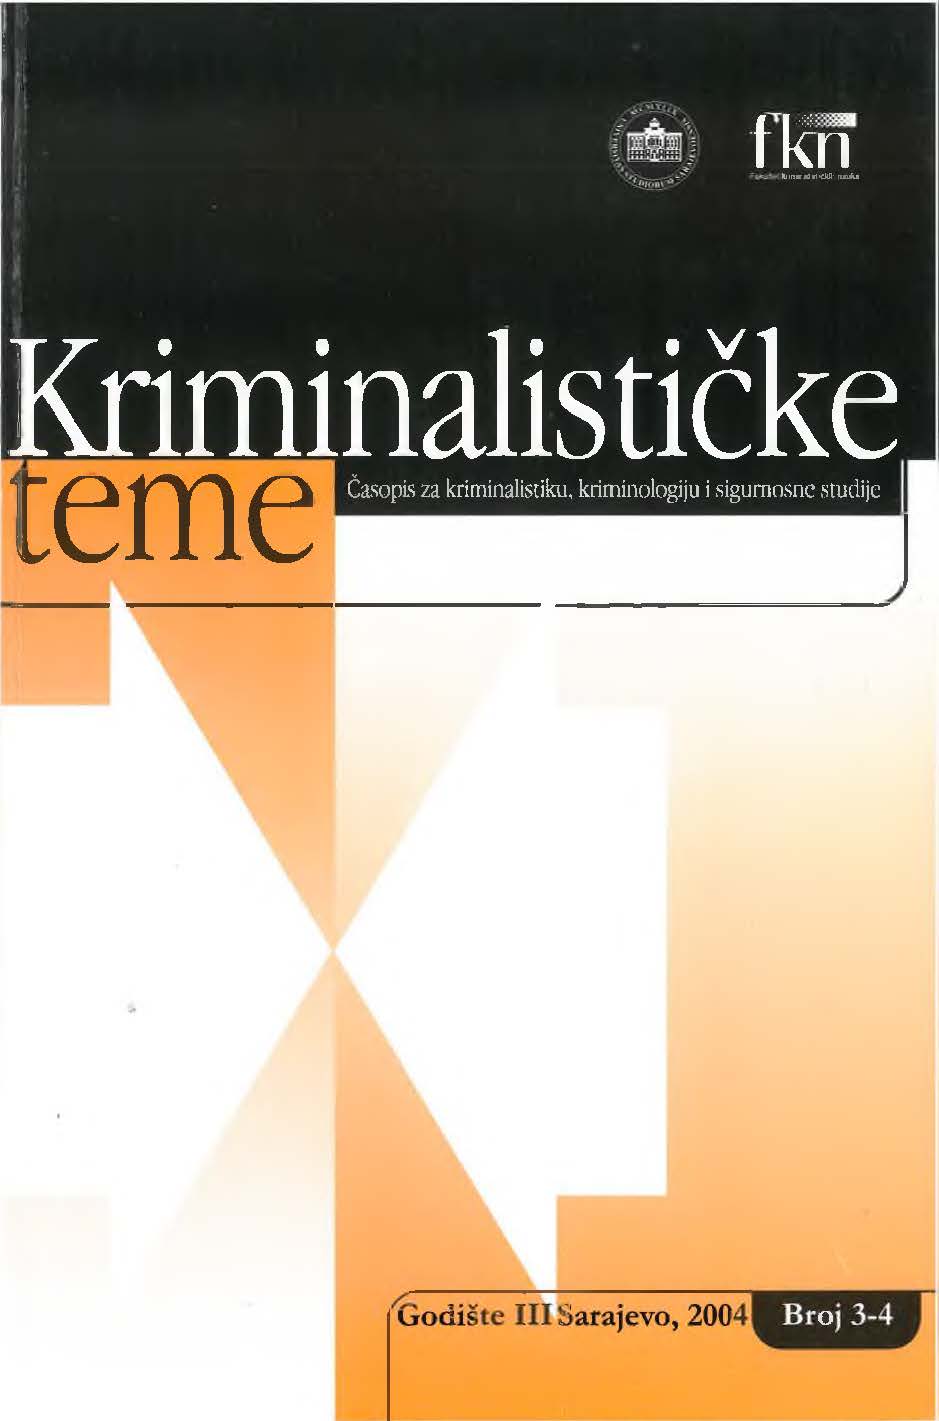 Kriminalističke teme – Časopis za kriminalistiku, kriminologiju i sigurnosne studije